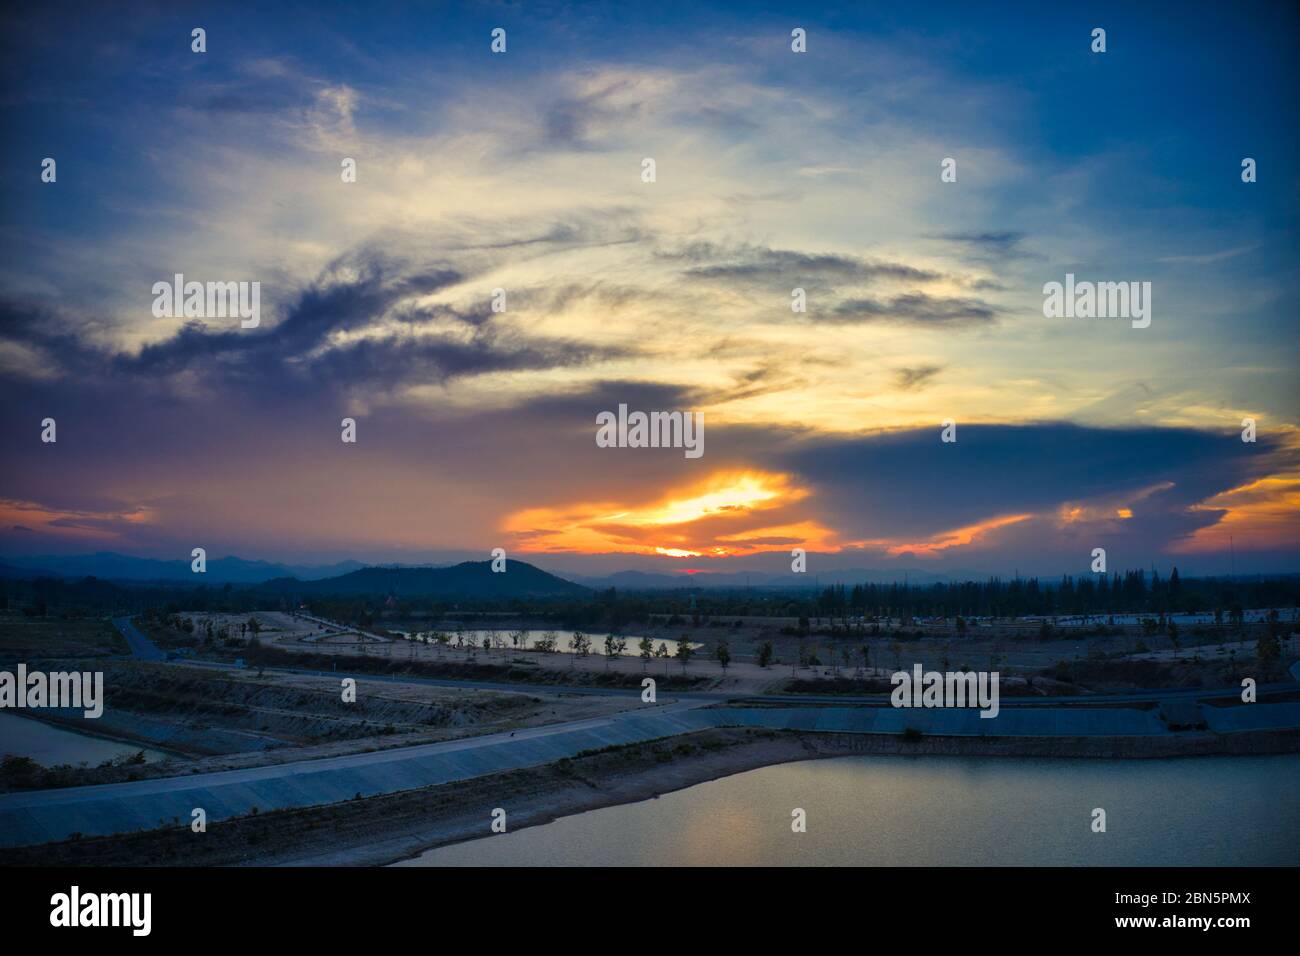 Cette photo unique montre le paysage vallonné avec des lacs, de hua Hin en thaïlande, pris avec un drone pendant un coucher de soleil fantastique! Banque D'Images